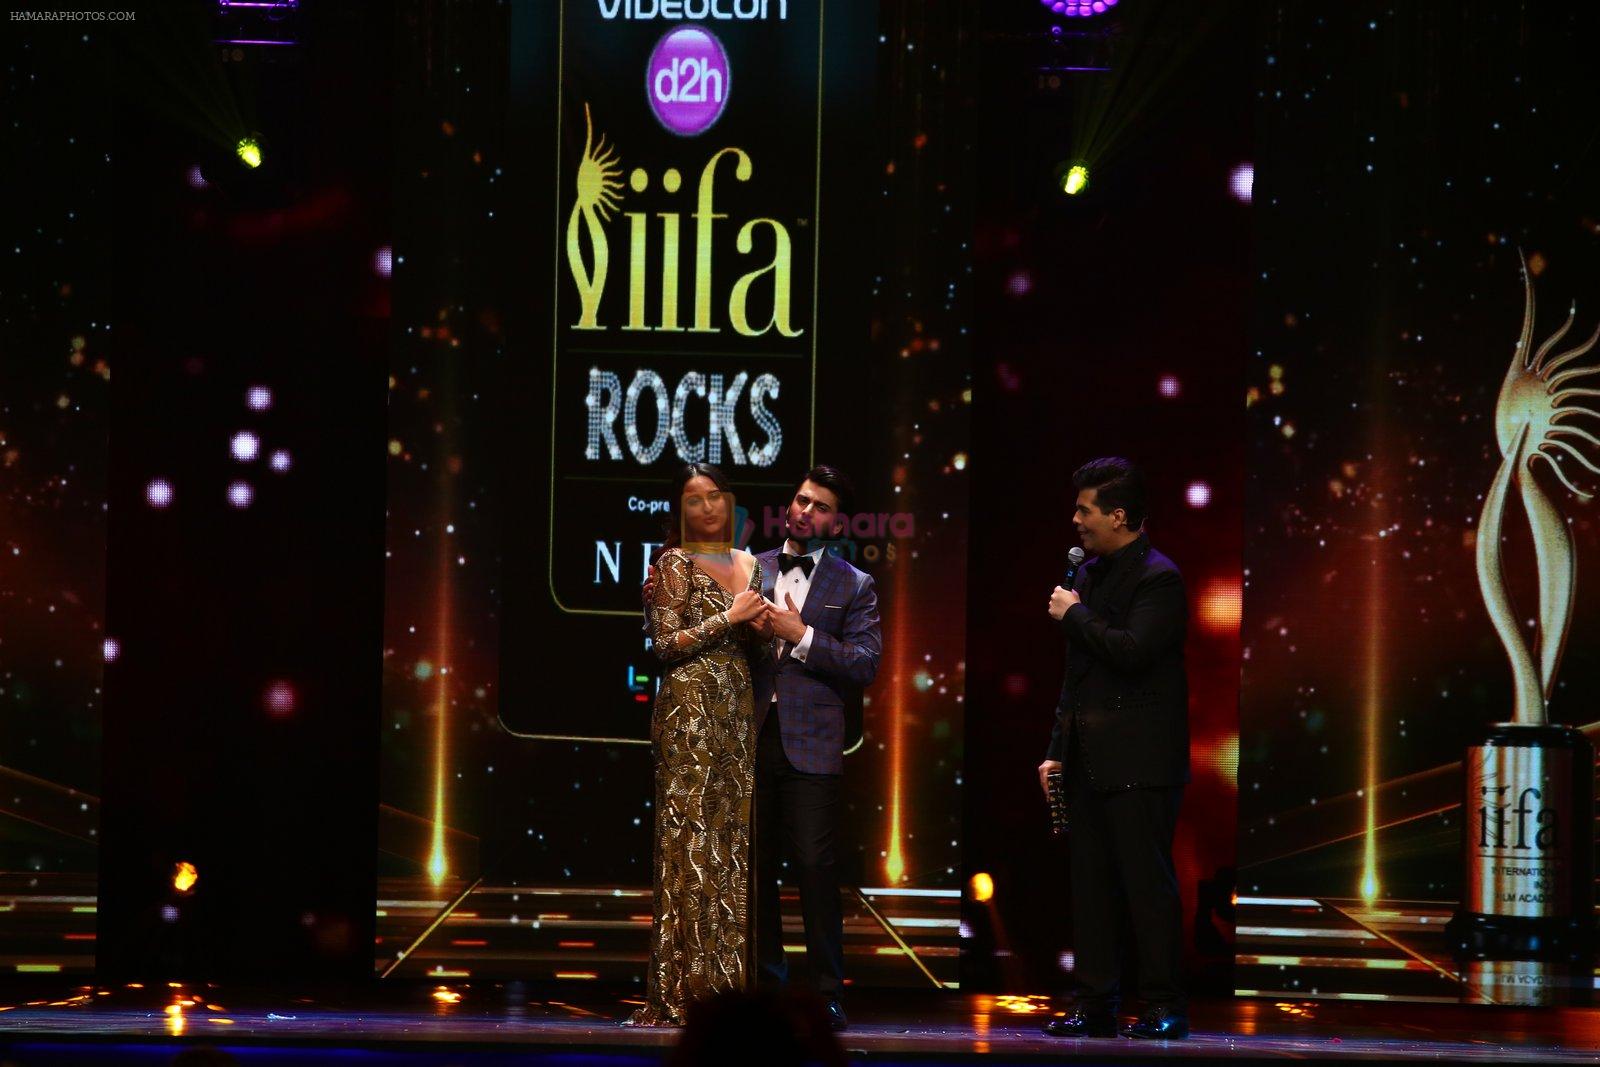 Sonakshi Sinha with hosts Fawad Khand and Karan Johar at Videocon d2h IIFA Rocks 2016 in Madrid